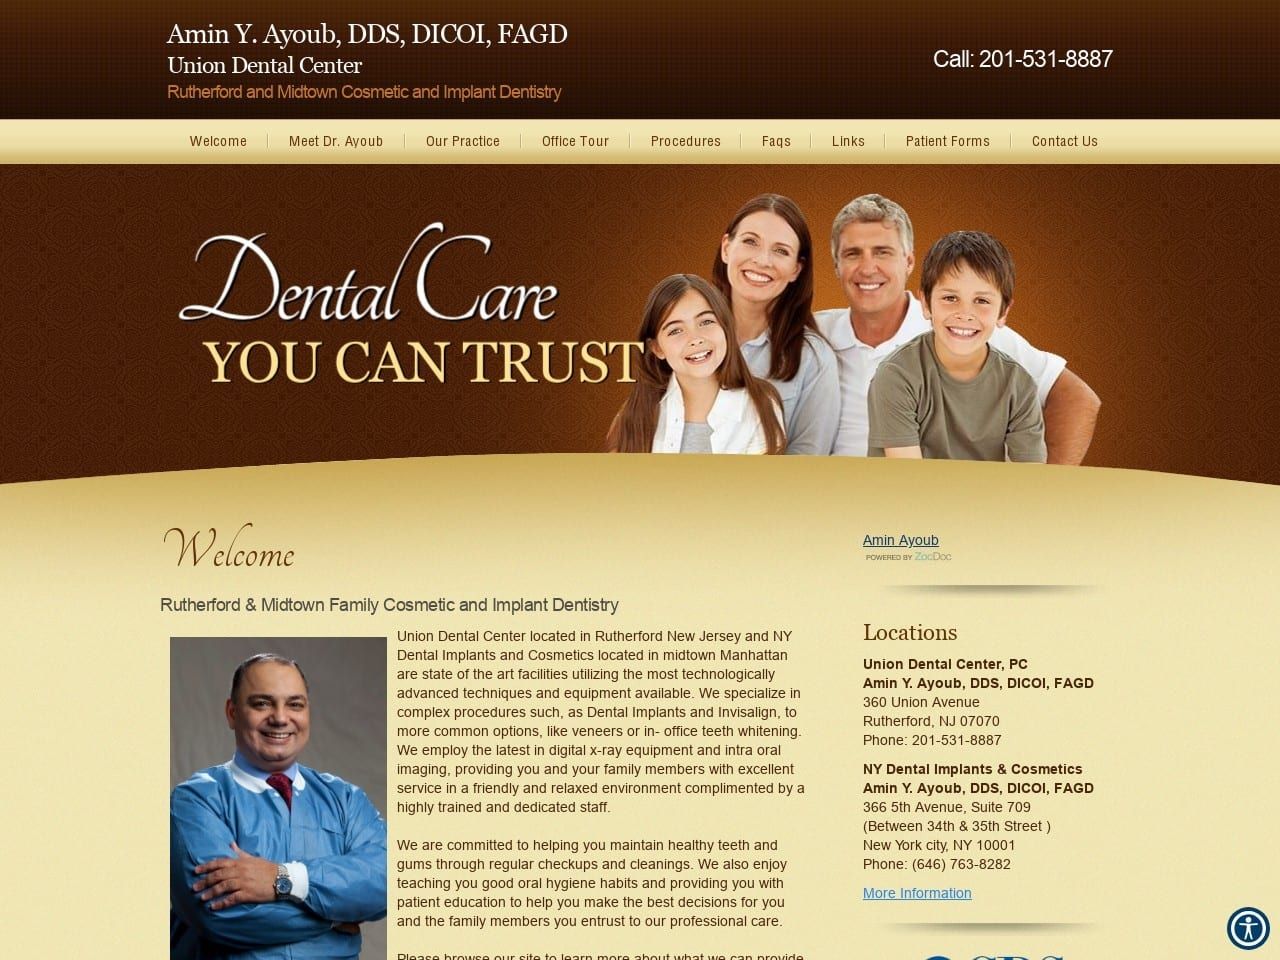 Union Dental Center Website Screenshot from drayoub.com